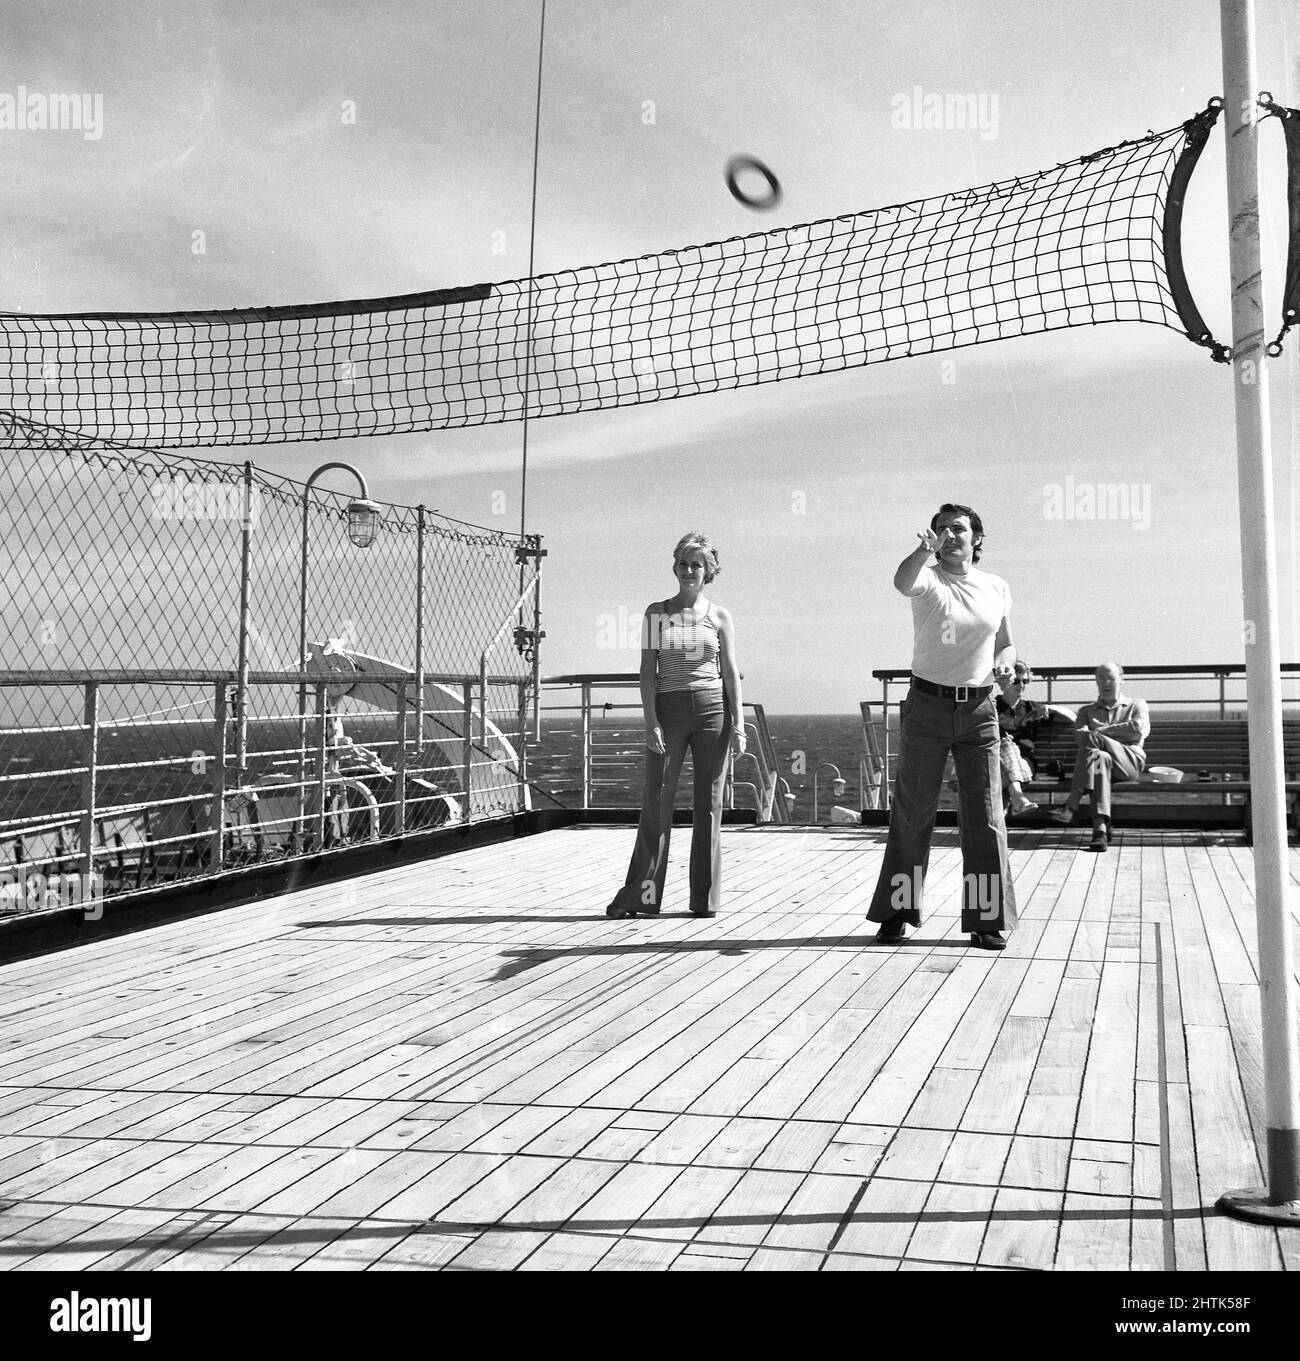 1960s, historisch, Deck-Tennis auf dem Sagafjord-Schiff, draußen auf dem Deck des Schiffes, ein Mann und eine Frau spielen ein Spiel mit dem Werfen über ein Netz aus einem Gummiring, ein Hybrid aus Tennis und Quoits und so ist es auch bekannt als Ring-Tennis, tennikoit oder tenniquoits. Stockfoto